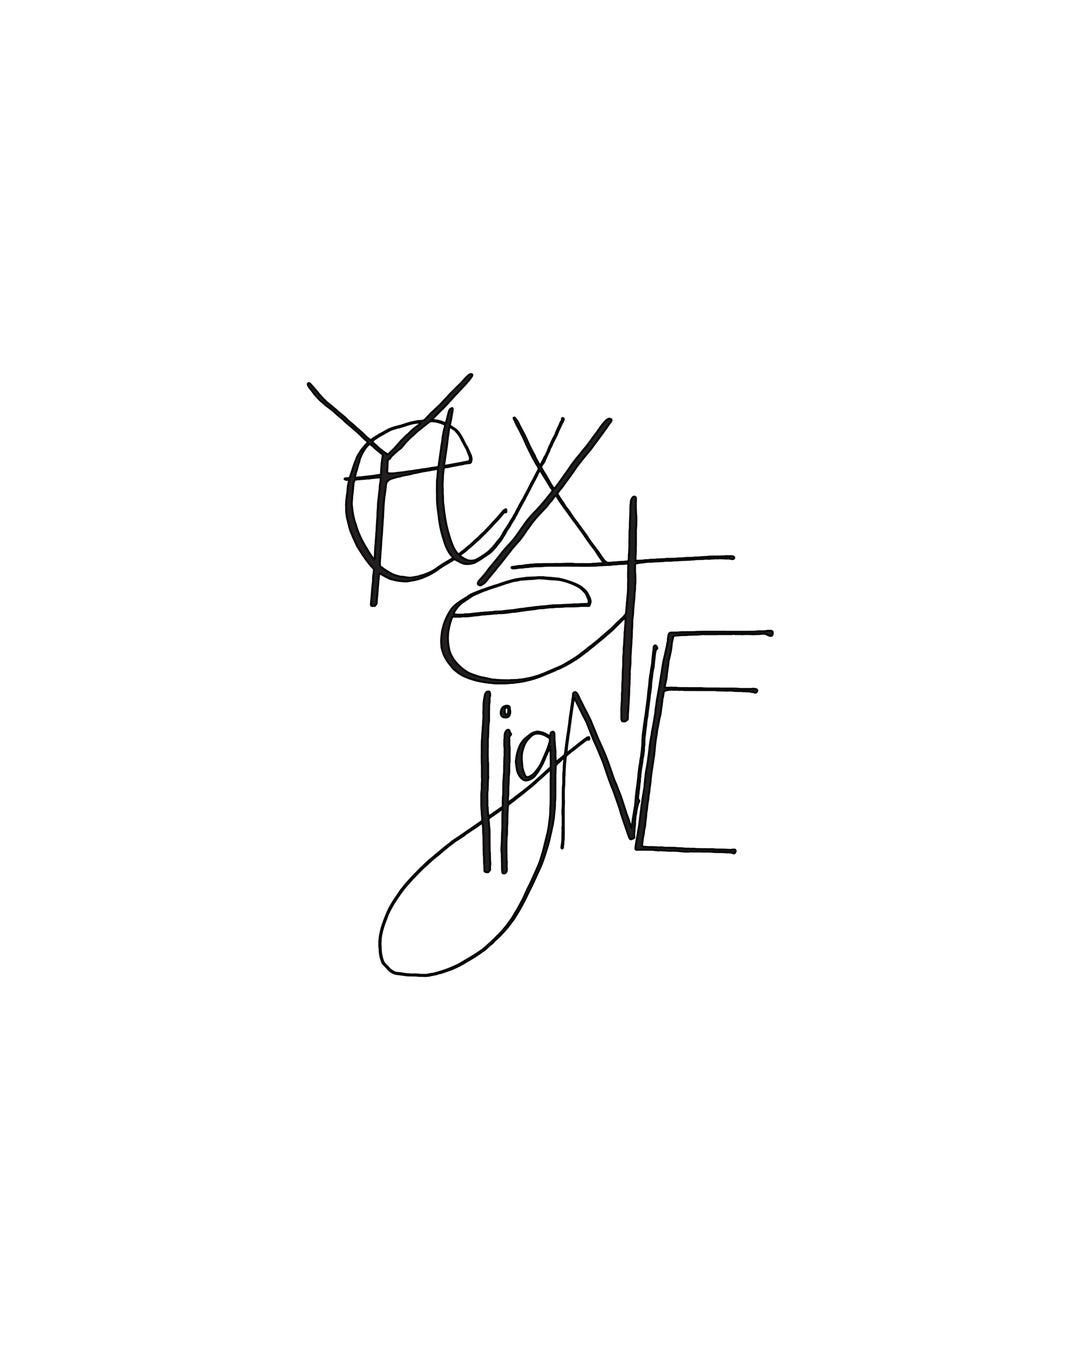 ヘアメイクアップアーティスト三苫愛のプロデュースブランド”YEUX ET LIGNE(ユエリーニュ)”からカラーマスカラの新色が発売開始